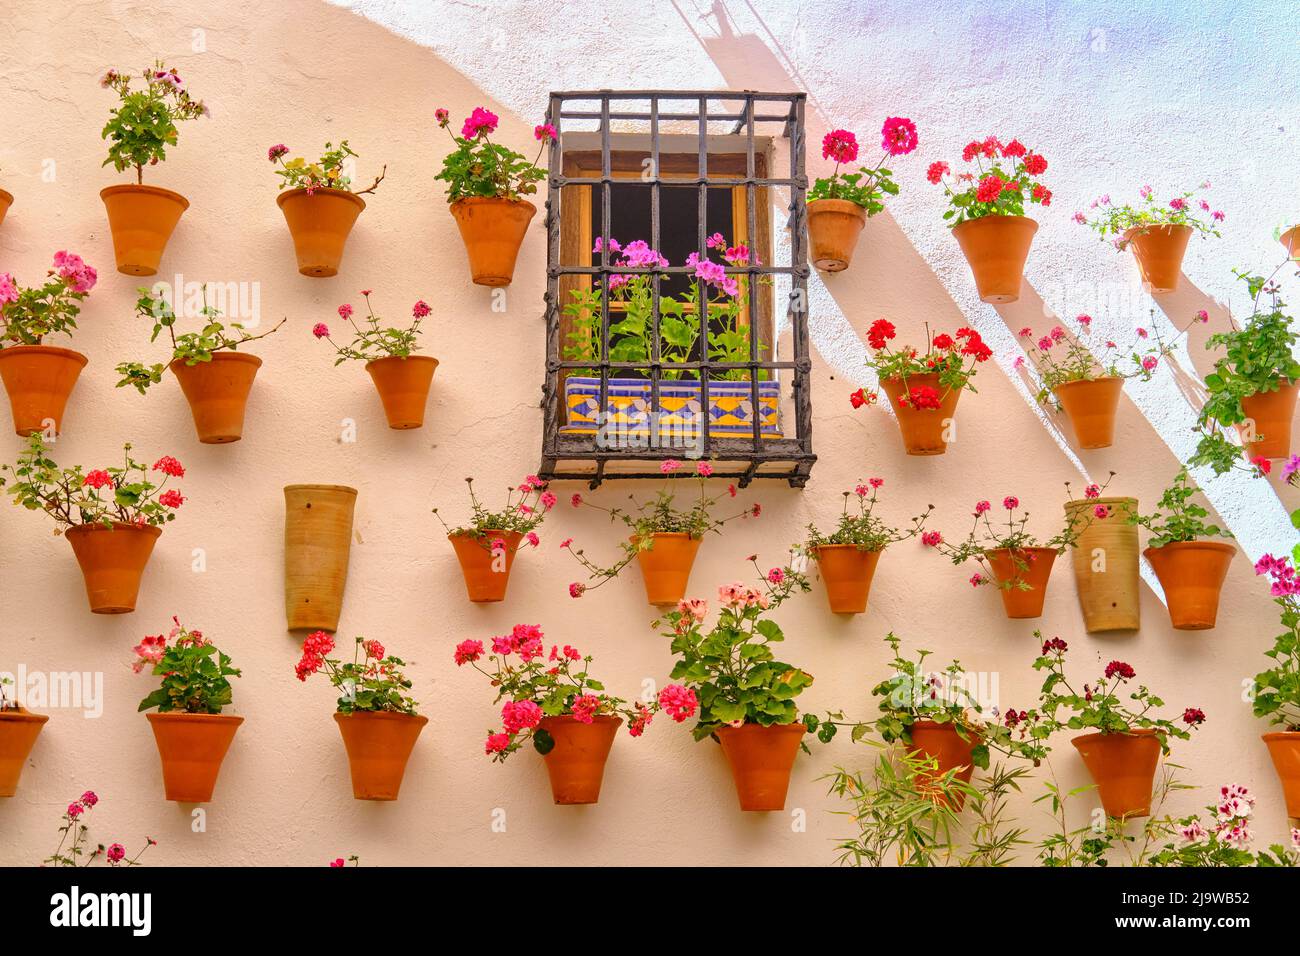 Un dettaglio di un patio tradizionale di Cordoba, un cortile pieno di fiori e freschezza. Patrimonio culturale immateriale dell'umanità dell'UNESCO., Juderia, SA Foto Stock